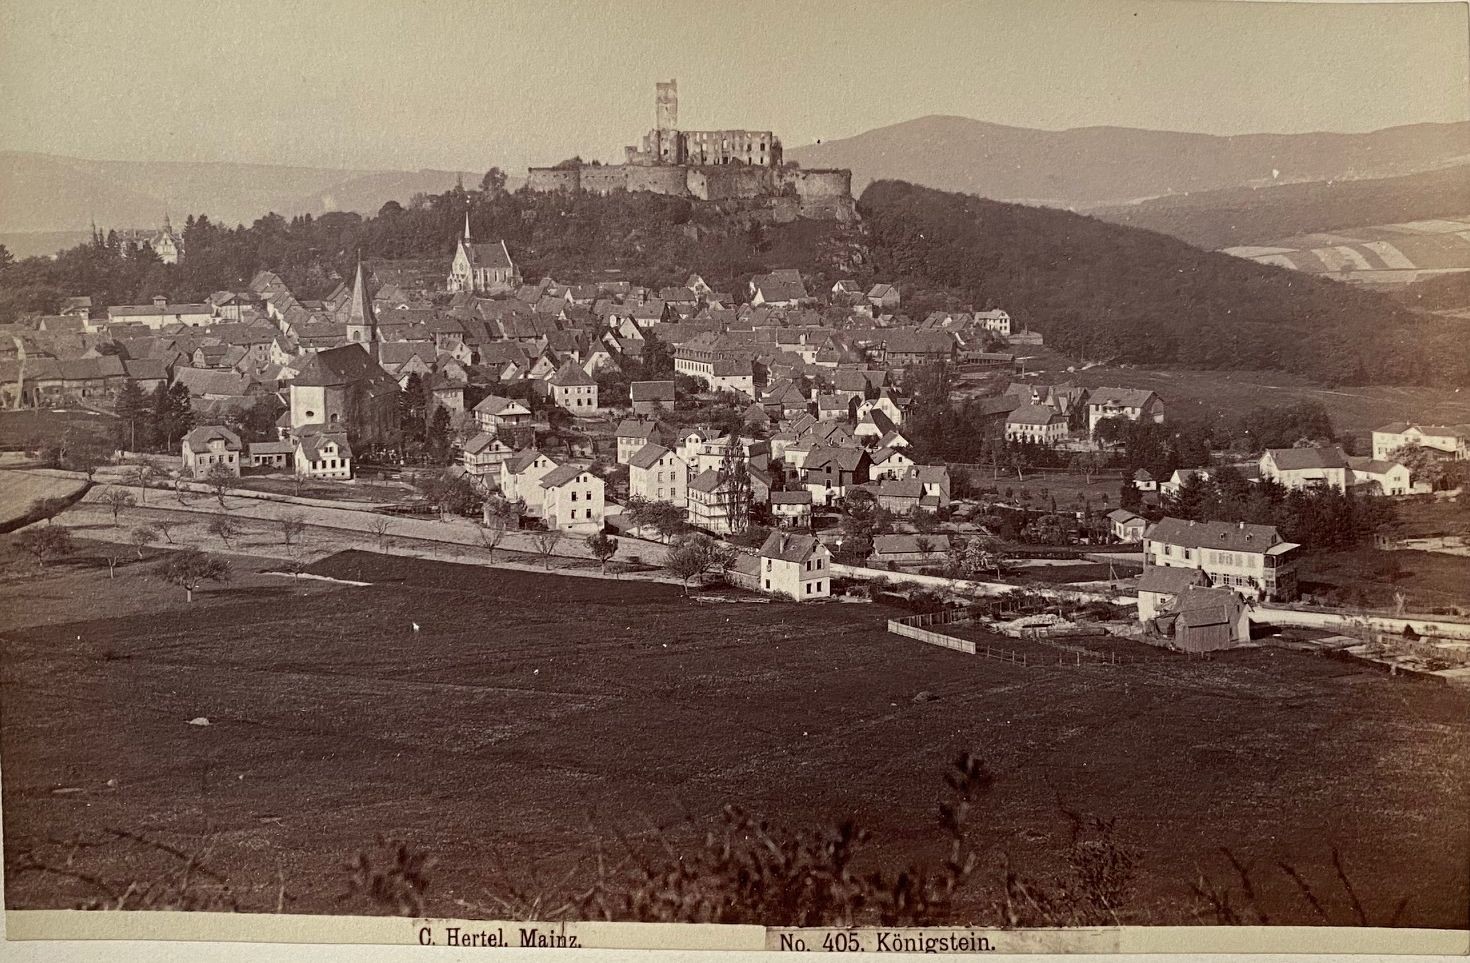 Fotografie, Carl Hertel No. 405, Königstein, ca. 1885 (Taunus-Rhein-Main - Regionalgeschichtliche Sammlung Dr. Stefan Naas CC BY-NC-SA)